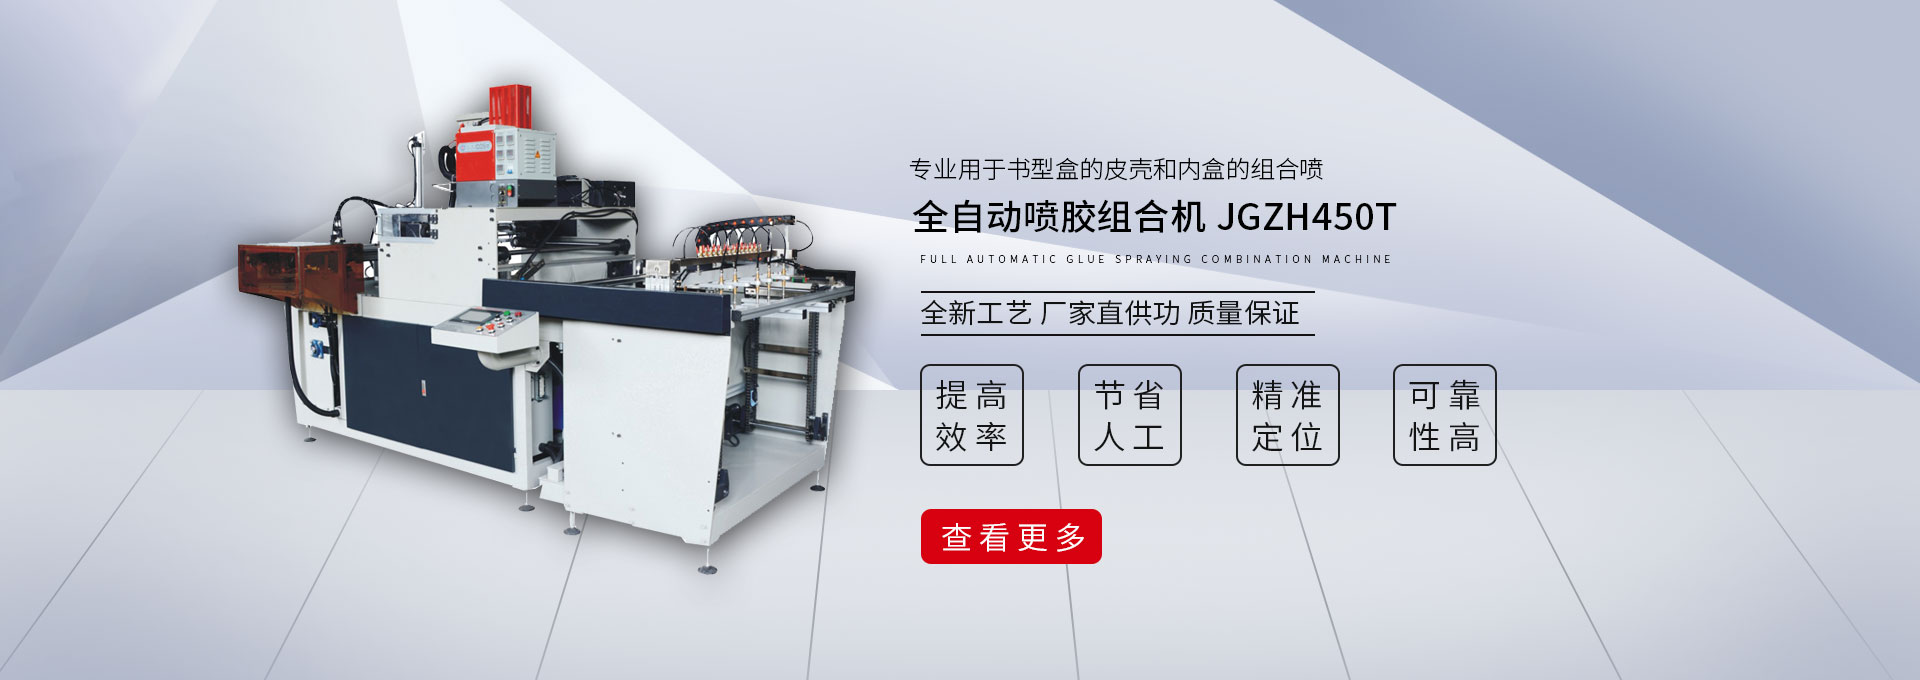 全自动喷胶组合机 JGZH450T